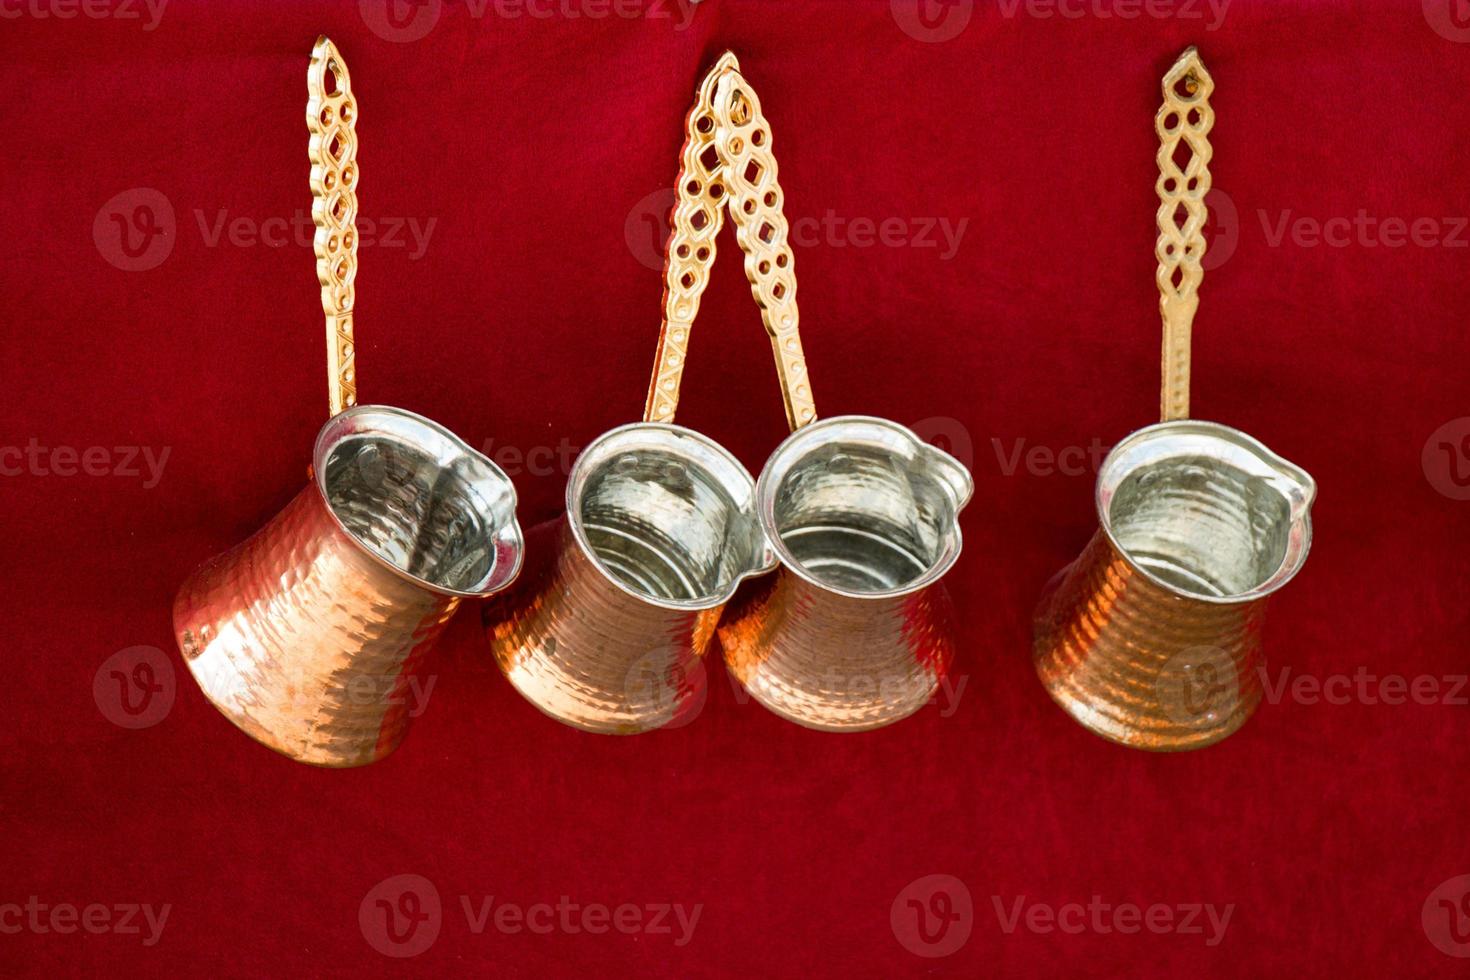 Türkische Kaffeekannen aus Metall im traditionellen Stil foto